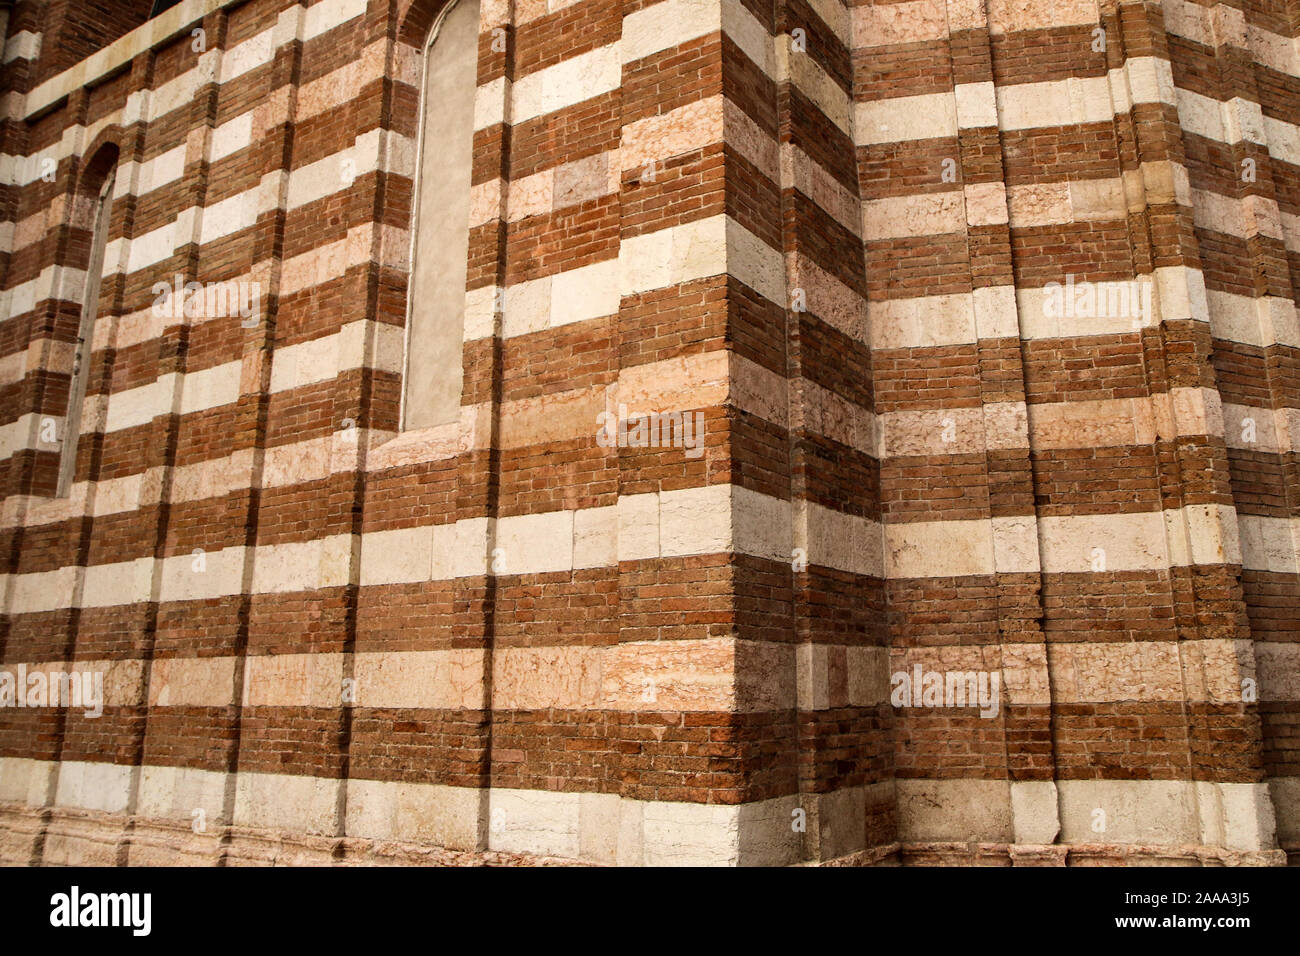 Un dettaglio della facciata dell'italiana Romana Chiesa fatta di mattoni con colori diversi. Il pattern sono le strisce in diverse tonalità. Foto Stock